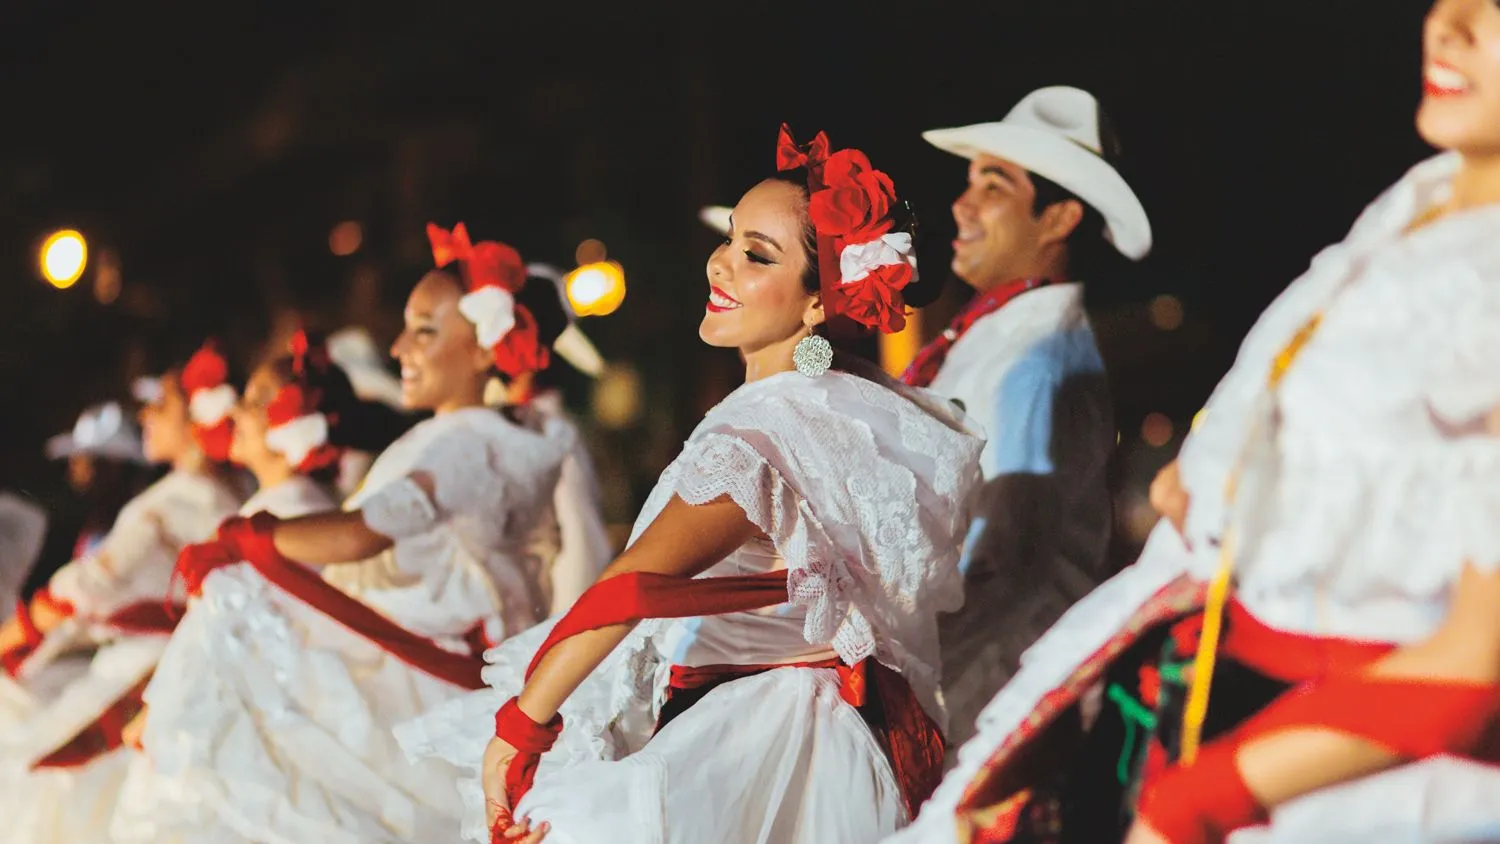 Bailes folclóricos de México: Trajes y elementos - Vallarta Lifestyles